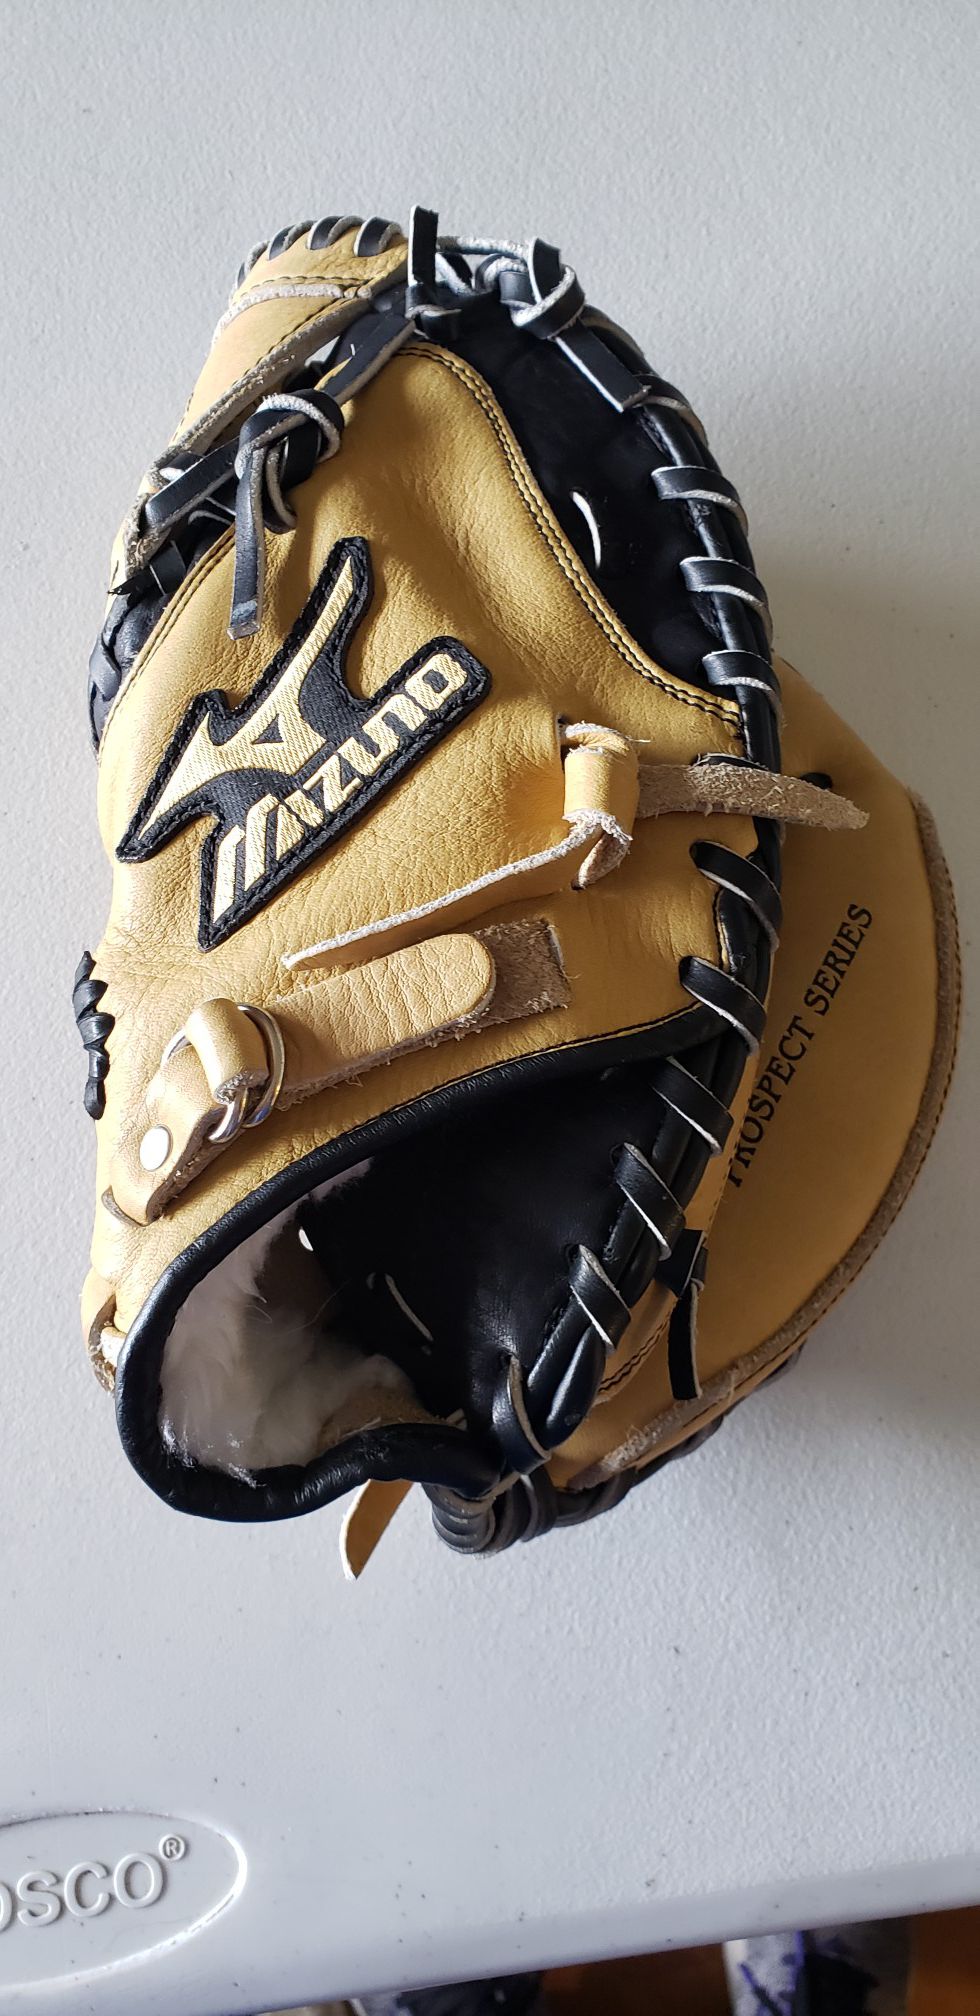 MIZUNO Youth baseball Glove (catchers) New!